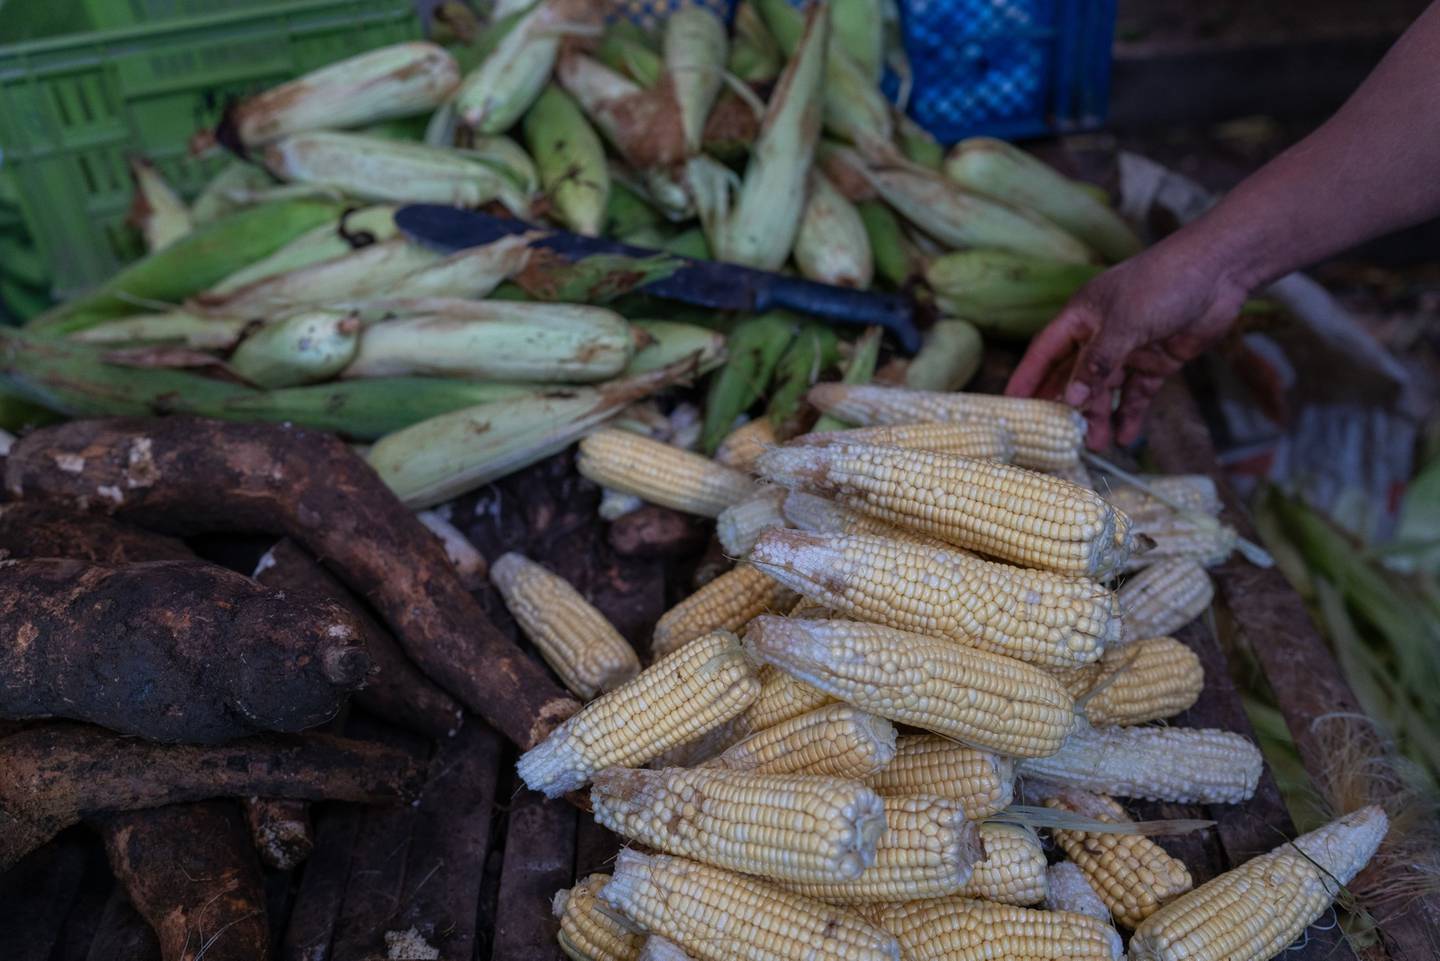 Trigo y maíz: ¿en qué momento Colombia prefirió importar más que producir?